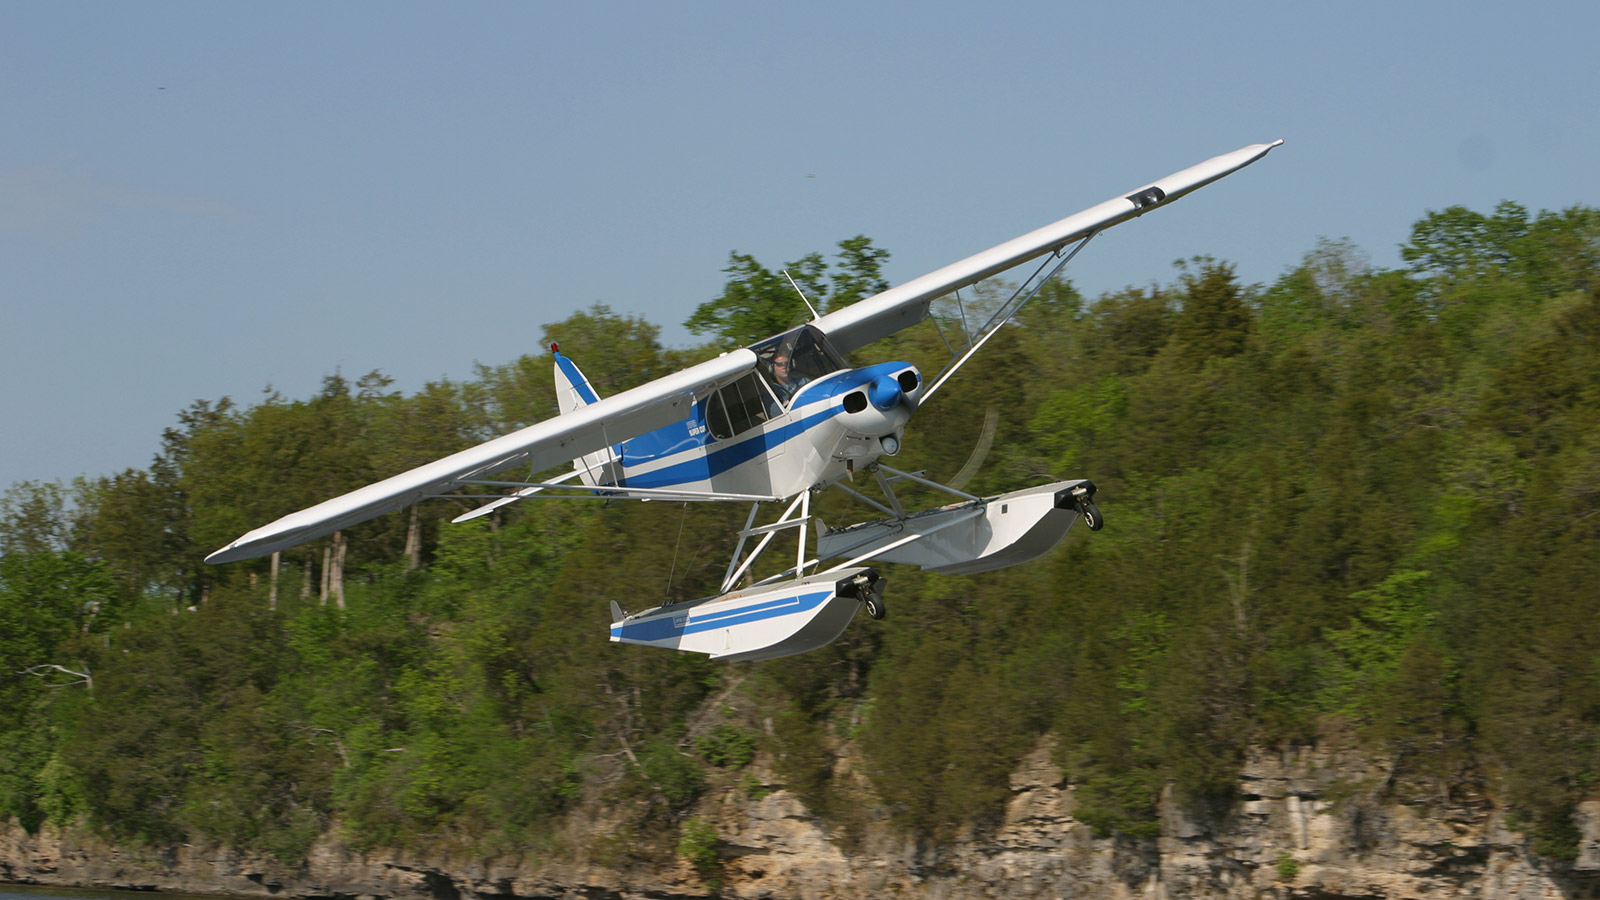 Piper Cub on Wipline 2100 Floats in Flight